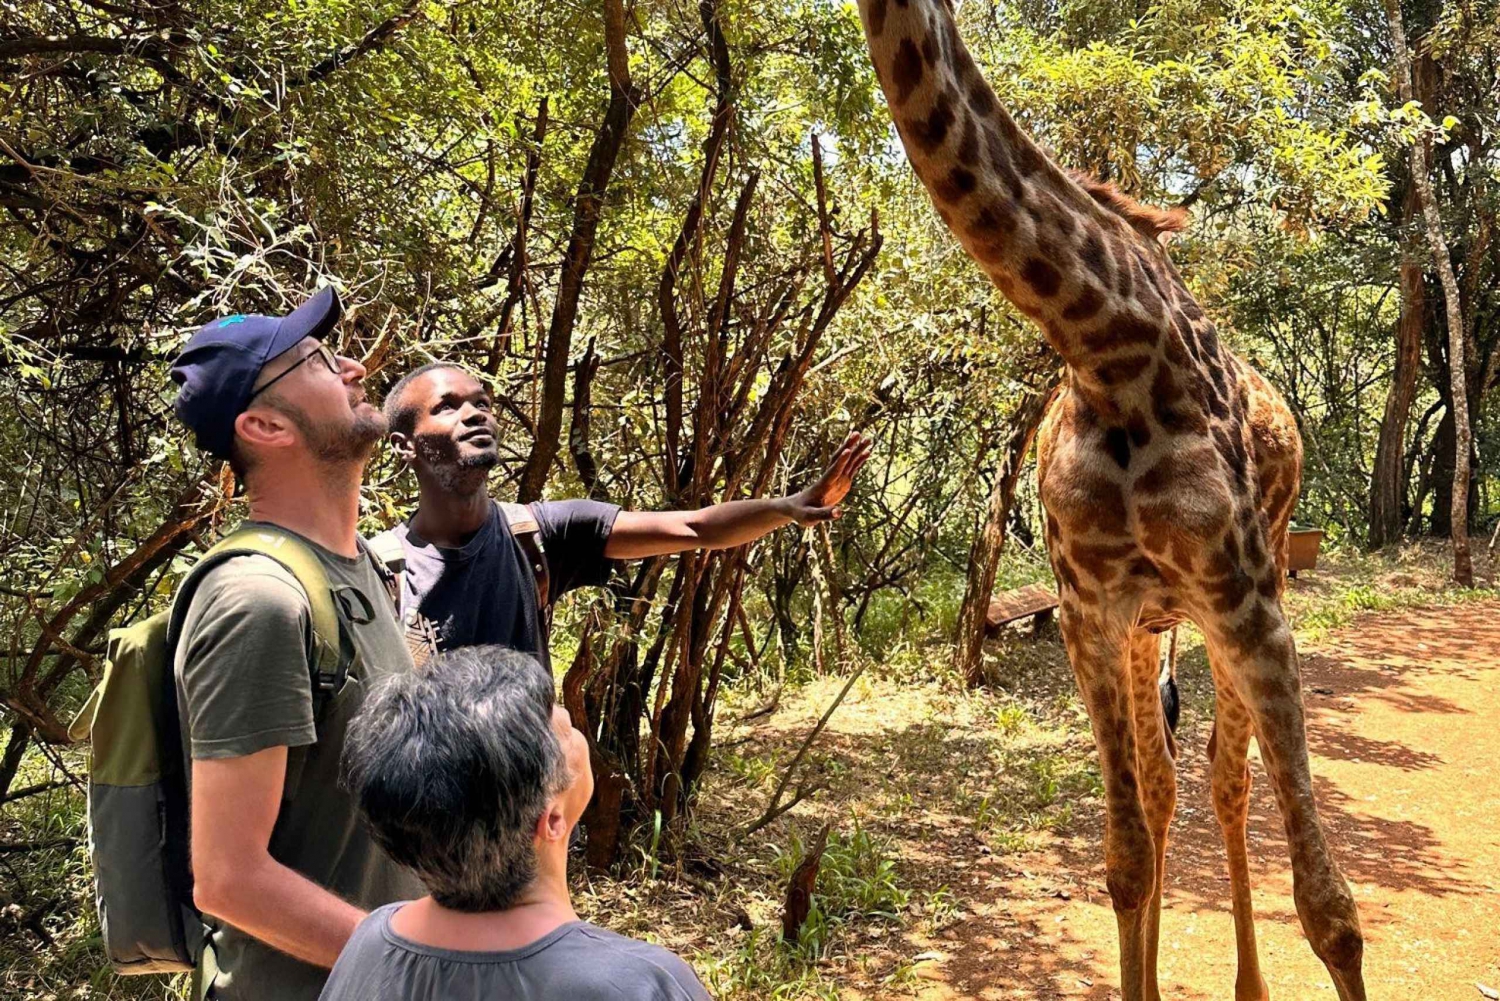 'Nairobis ultimative eventyr med dyreliv og kultur